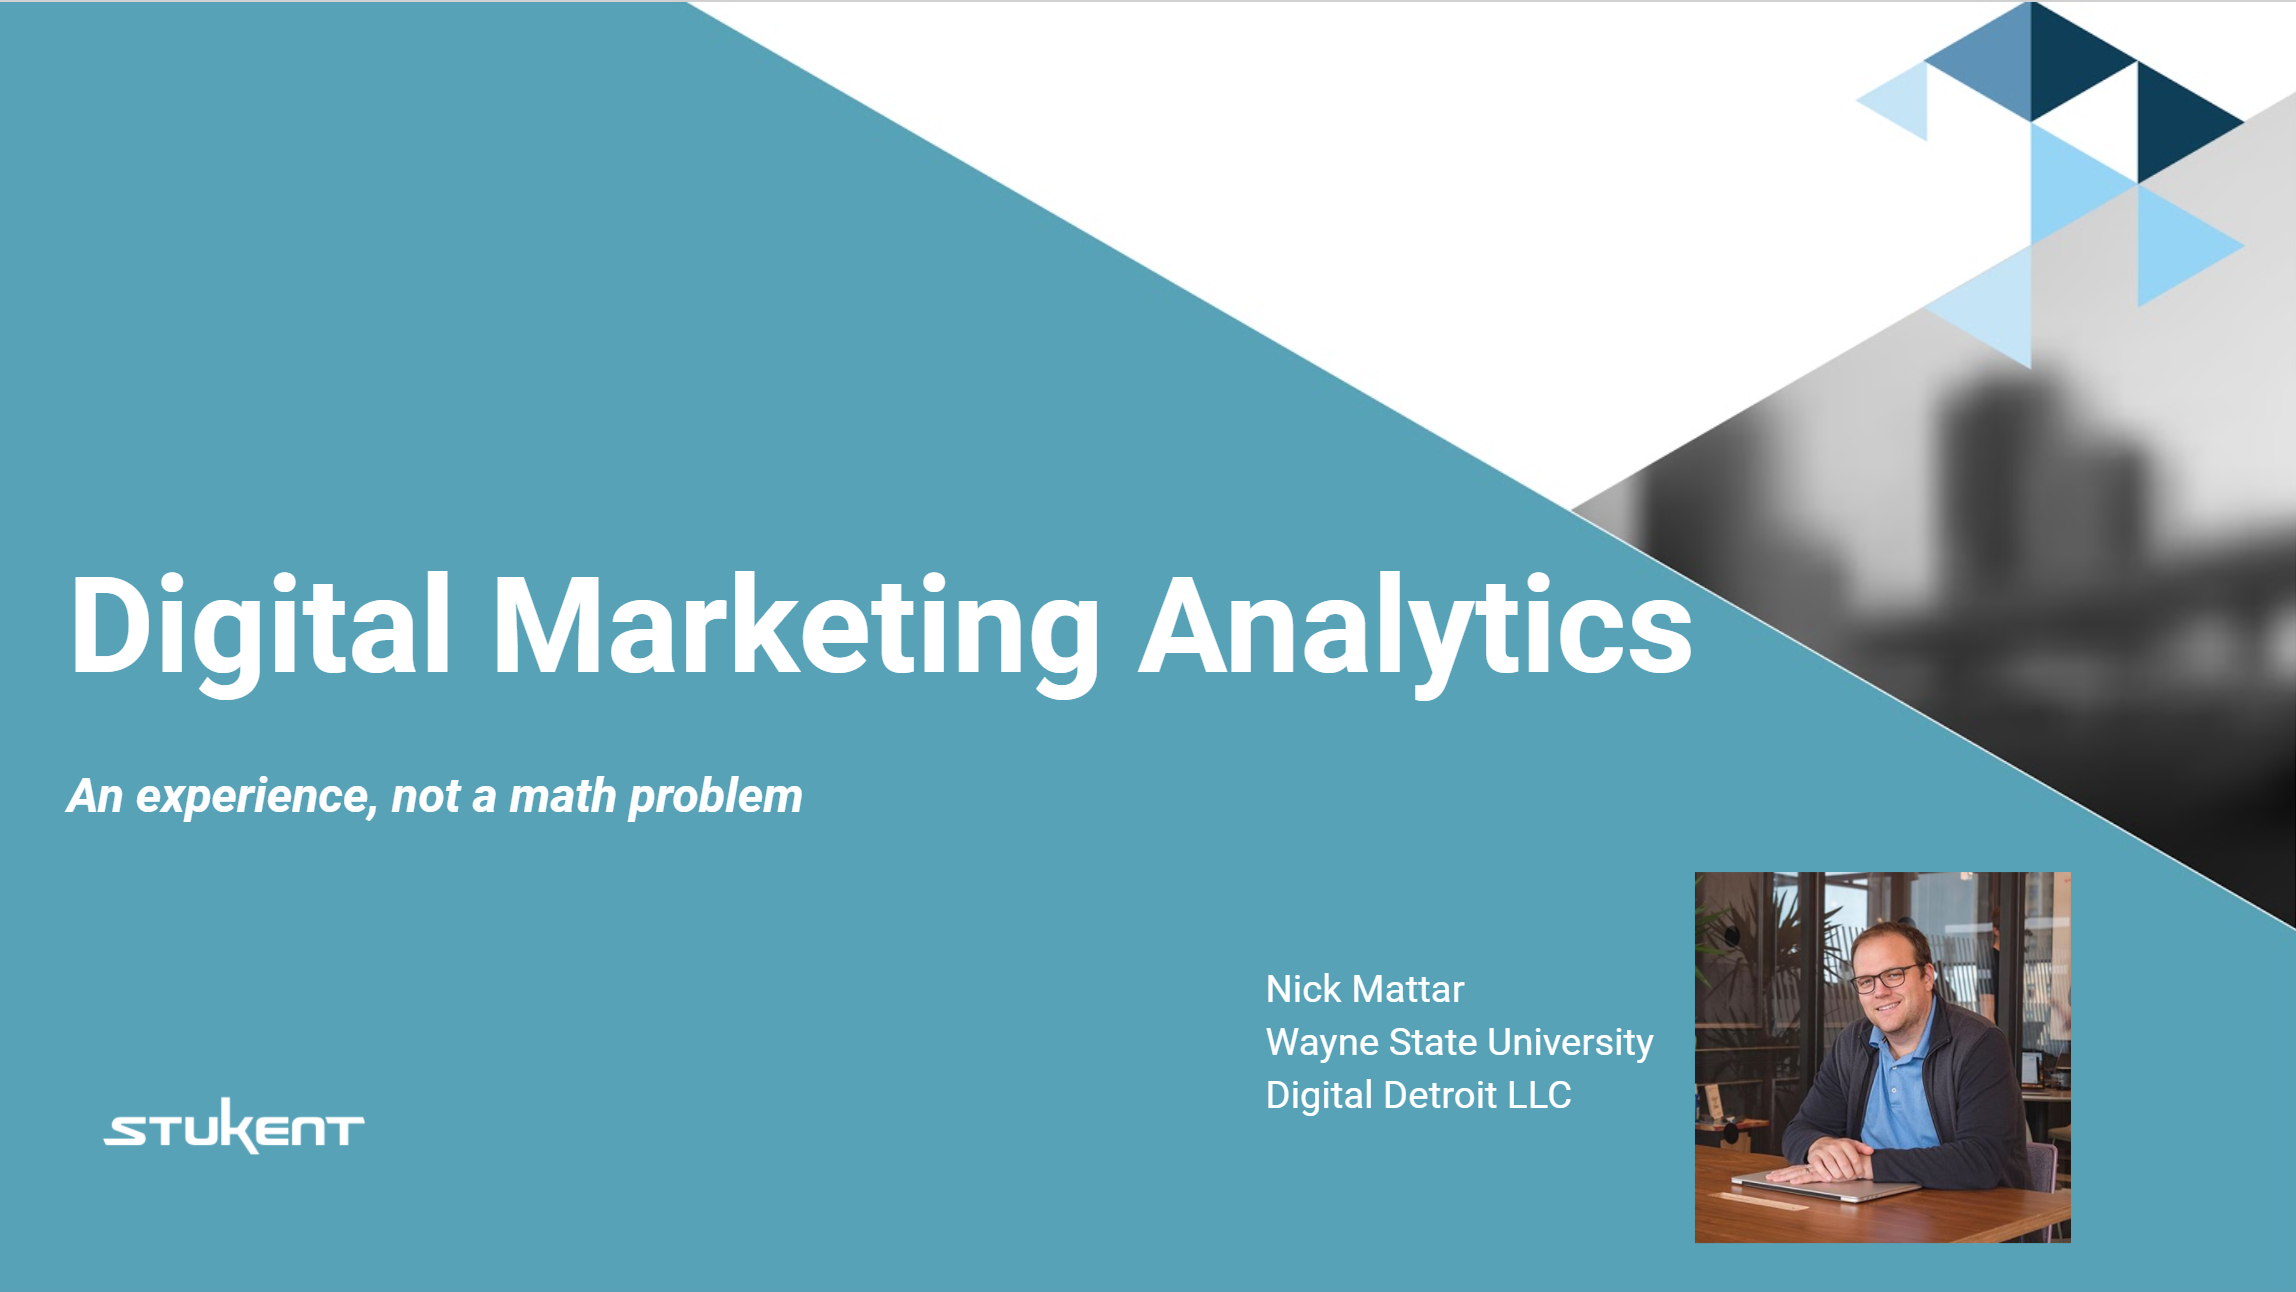 Digital Marketing Analytics: An Experience, Not a Math Problem